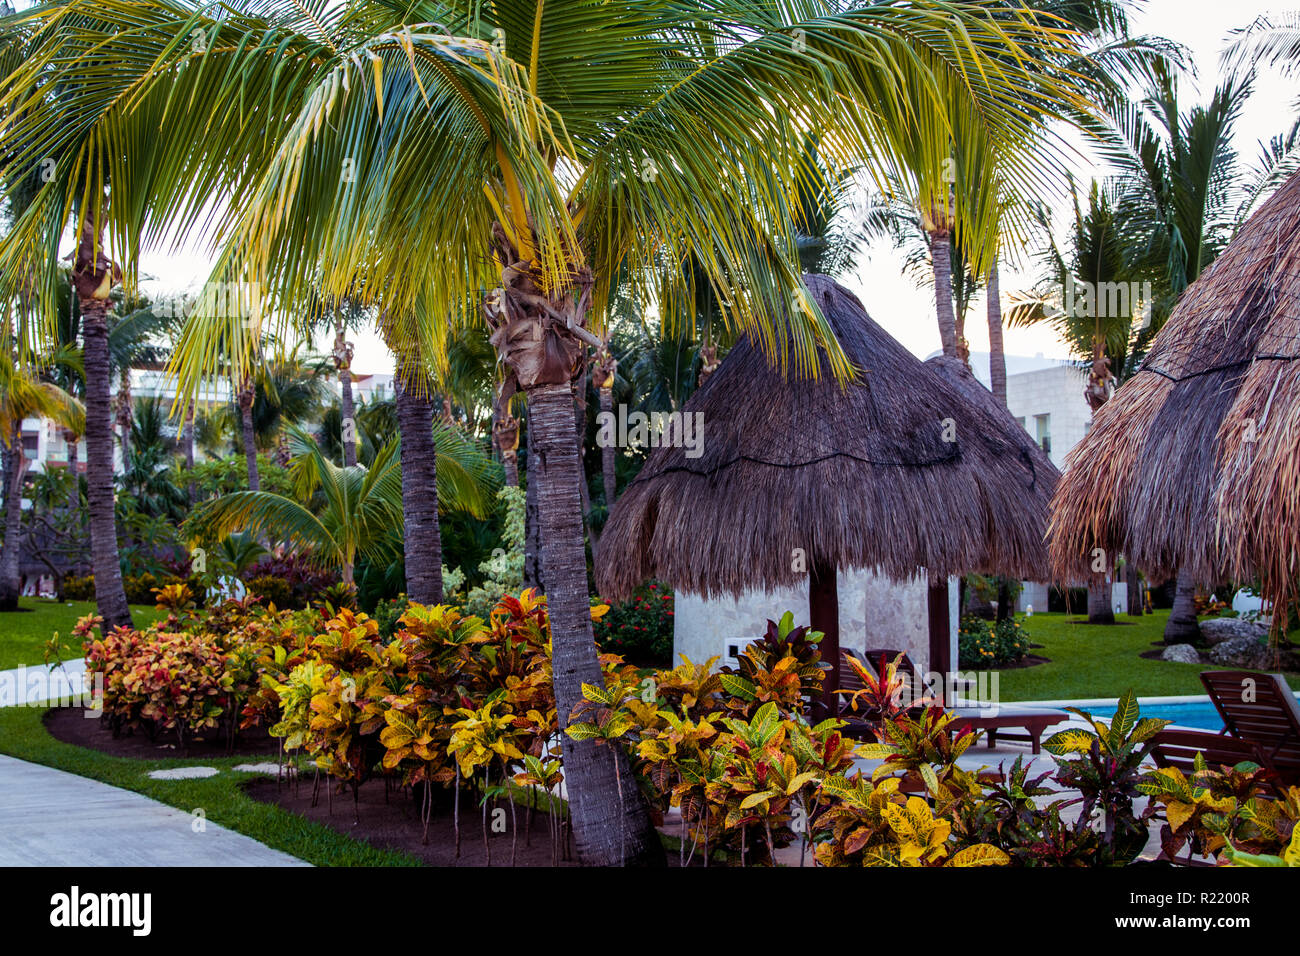 Hôtel 5 étoiles à Cancun au Mexique Banque D'Images